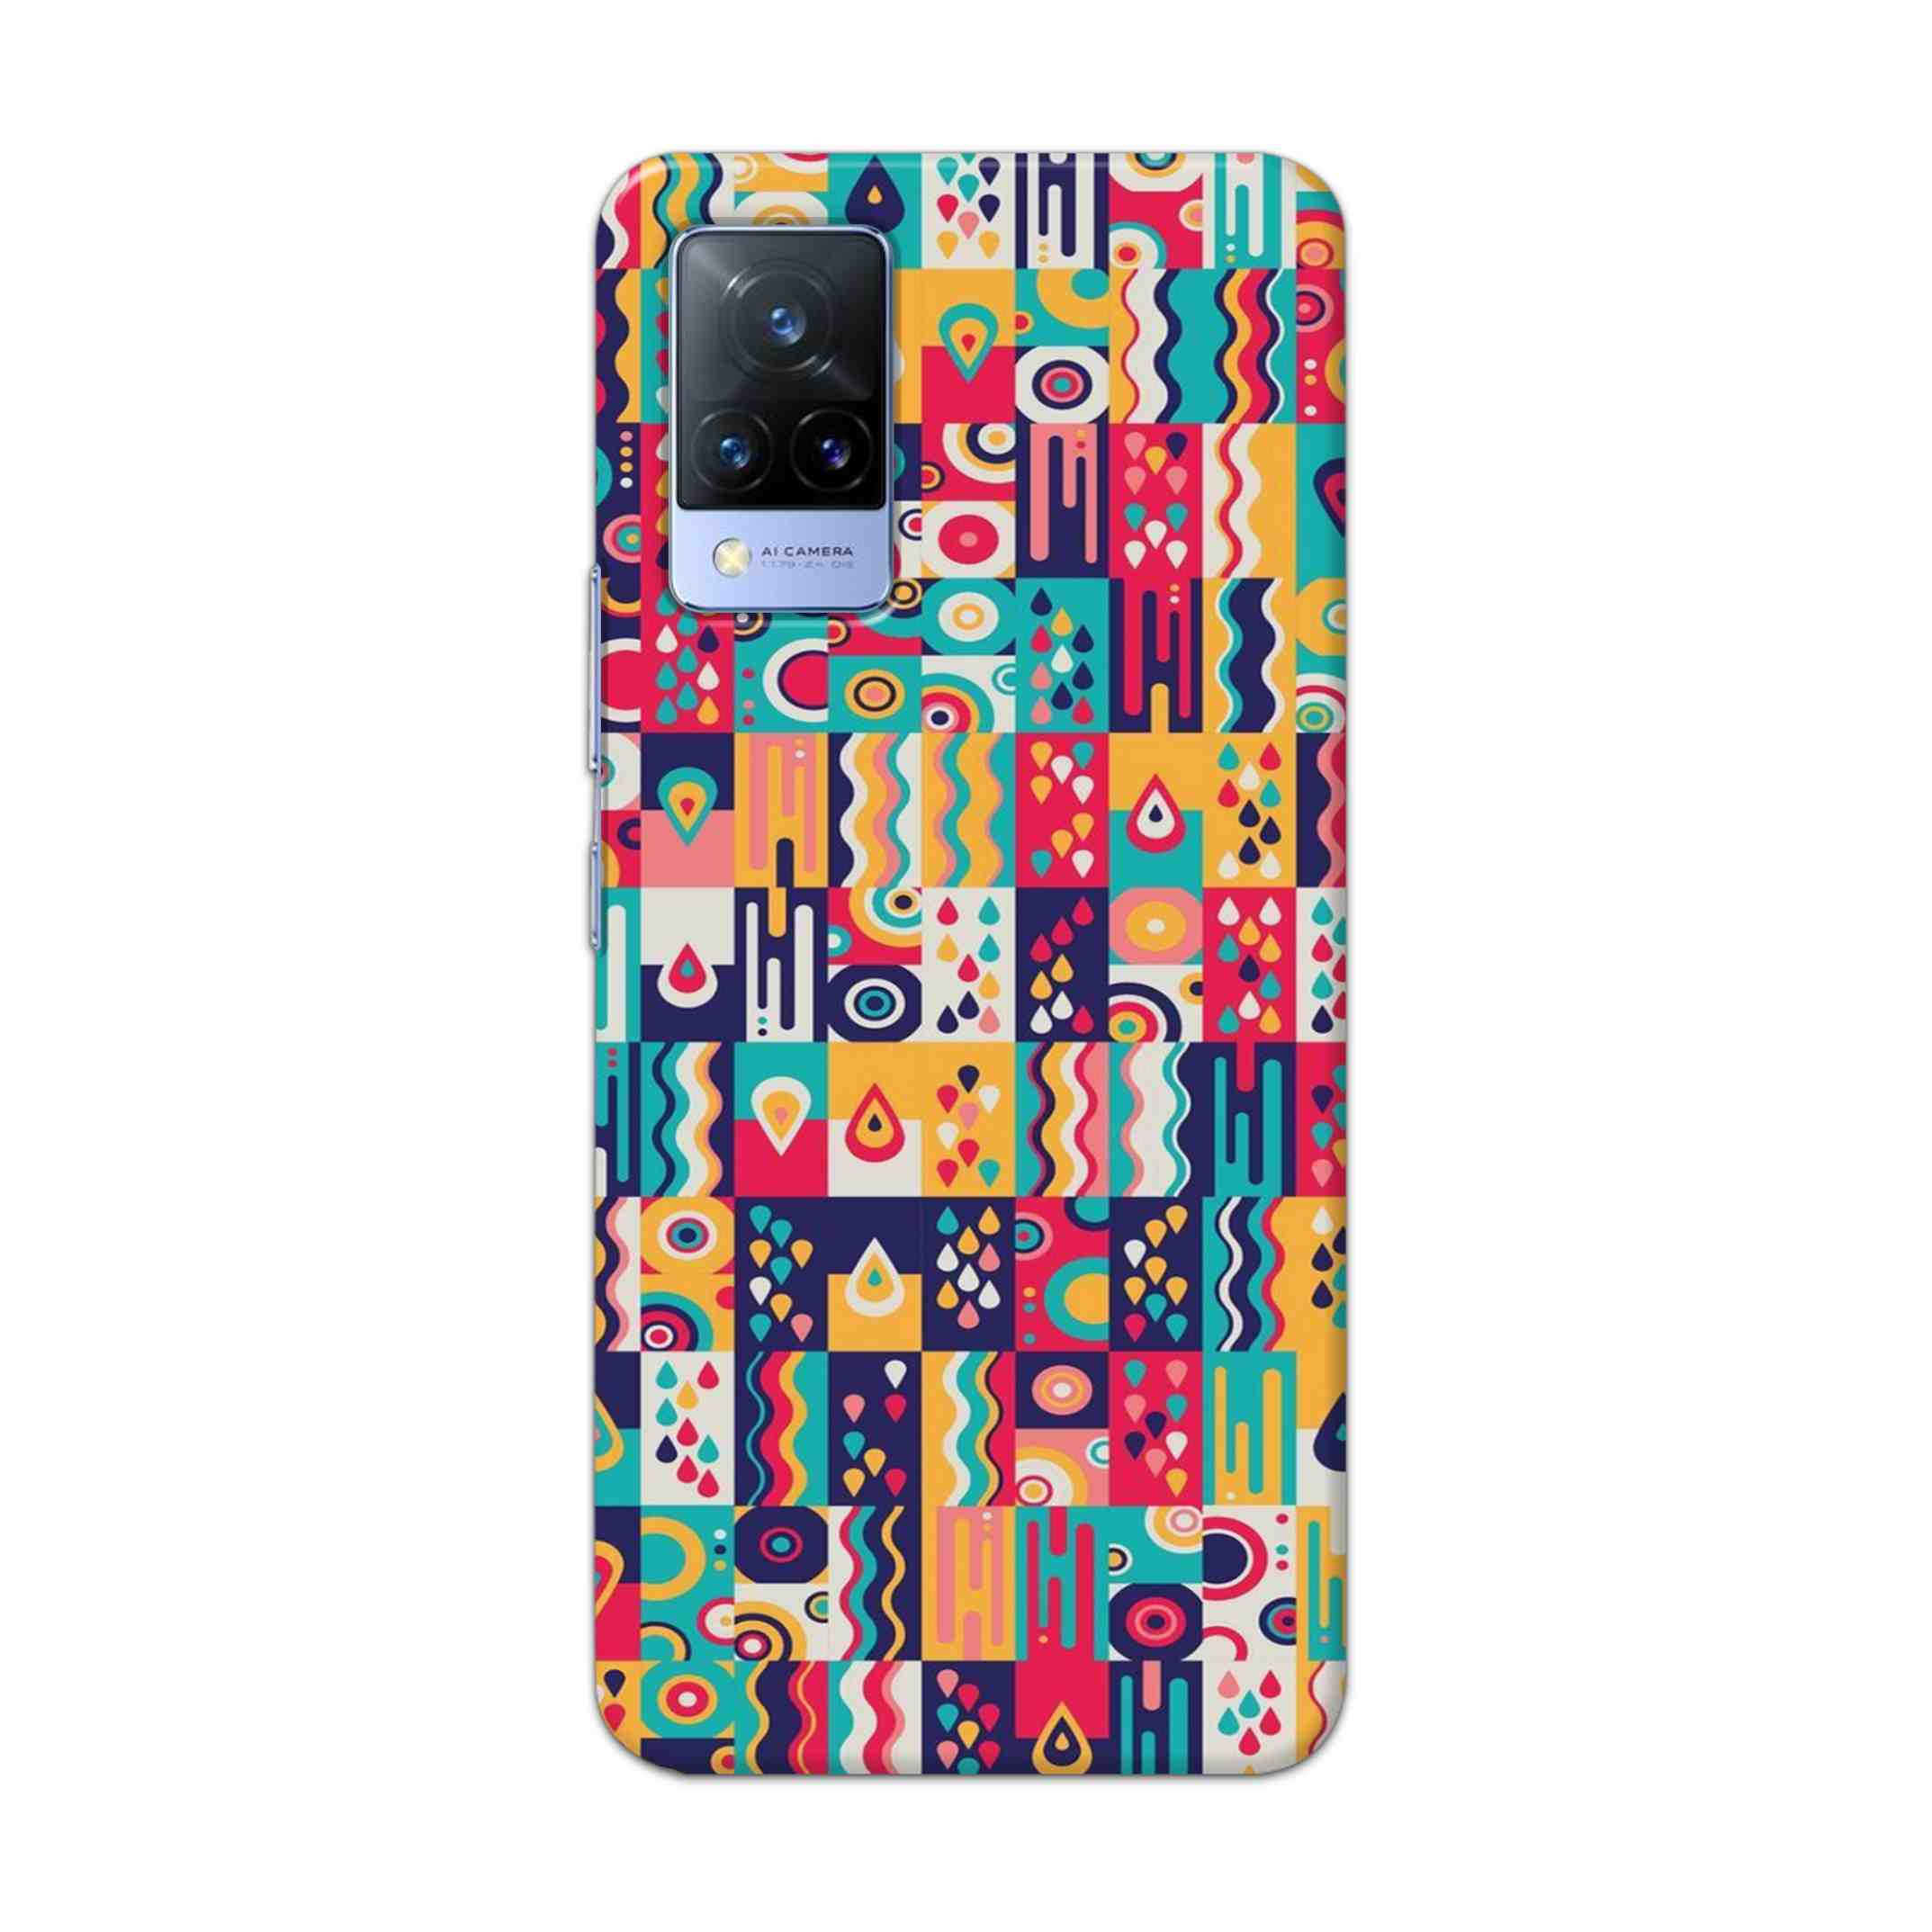 Buy Art Hard Back Mobile Phone Case Cover For Vivo V21 Online